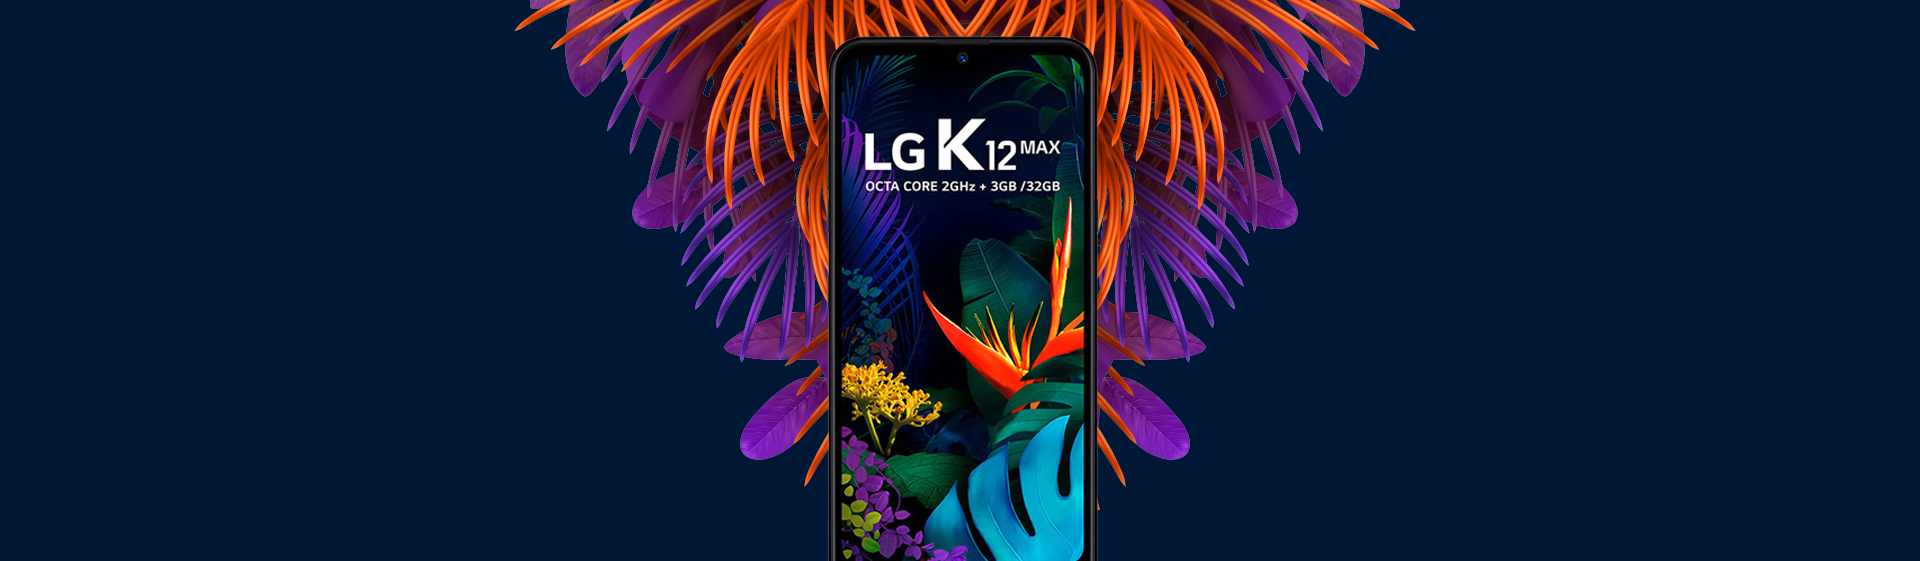 LG K12 Max é bom? Analisamos a ficha técnica do celular intermediário